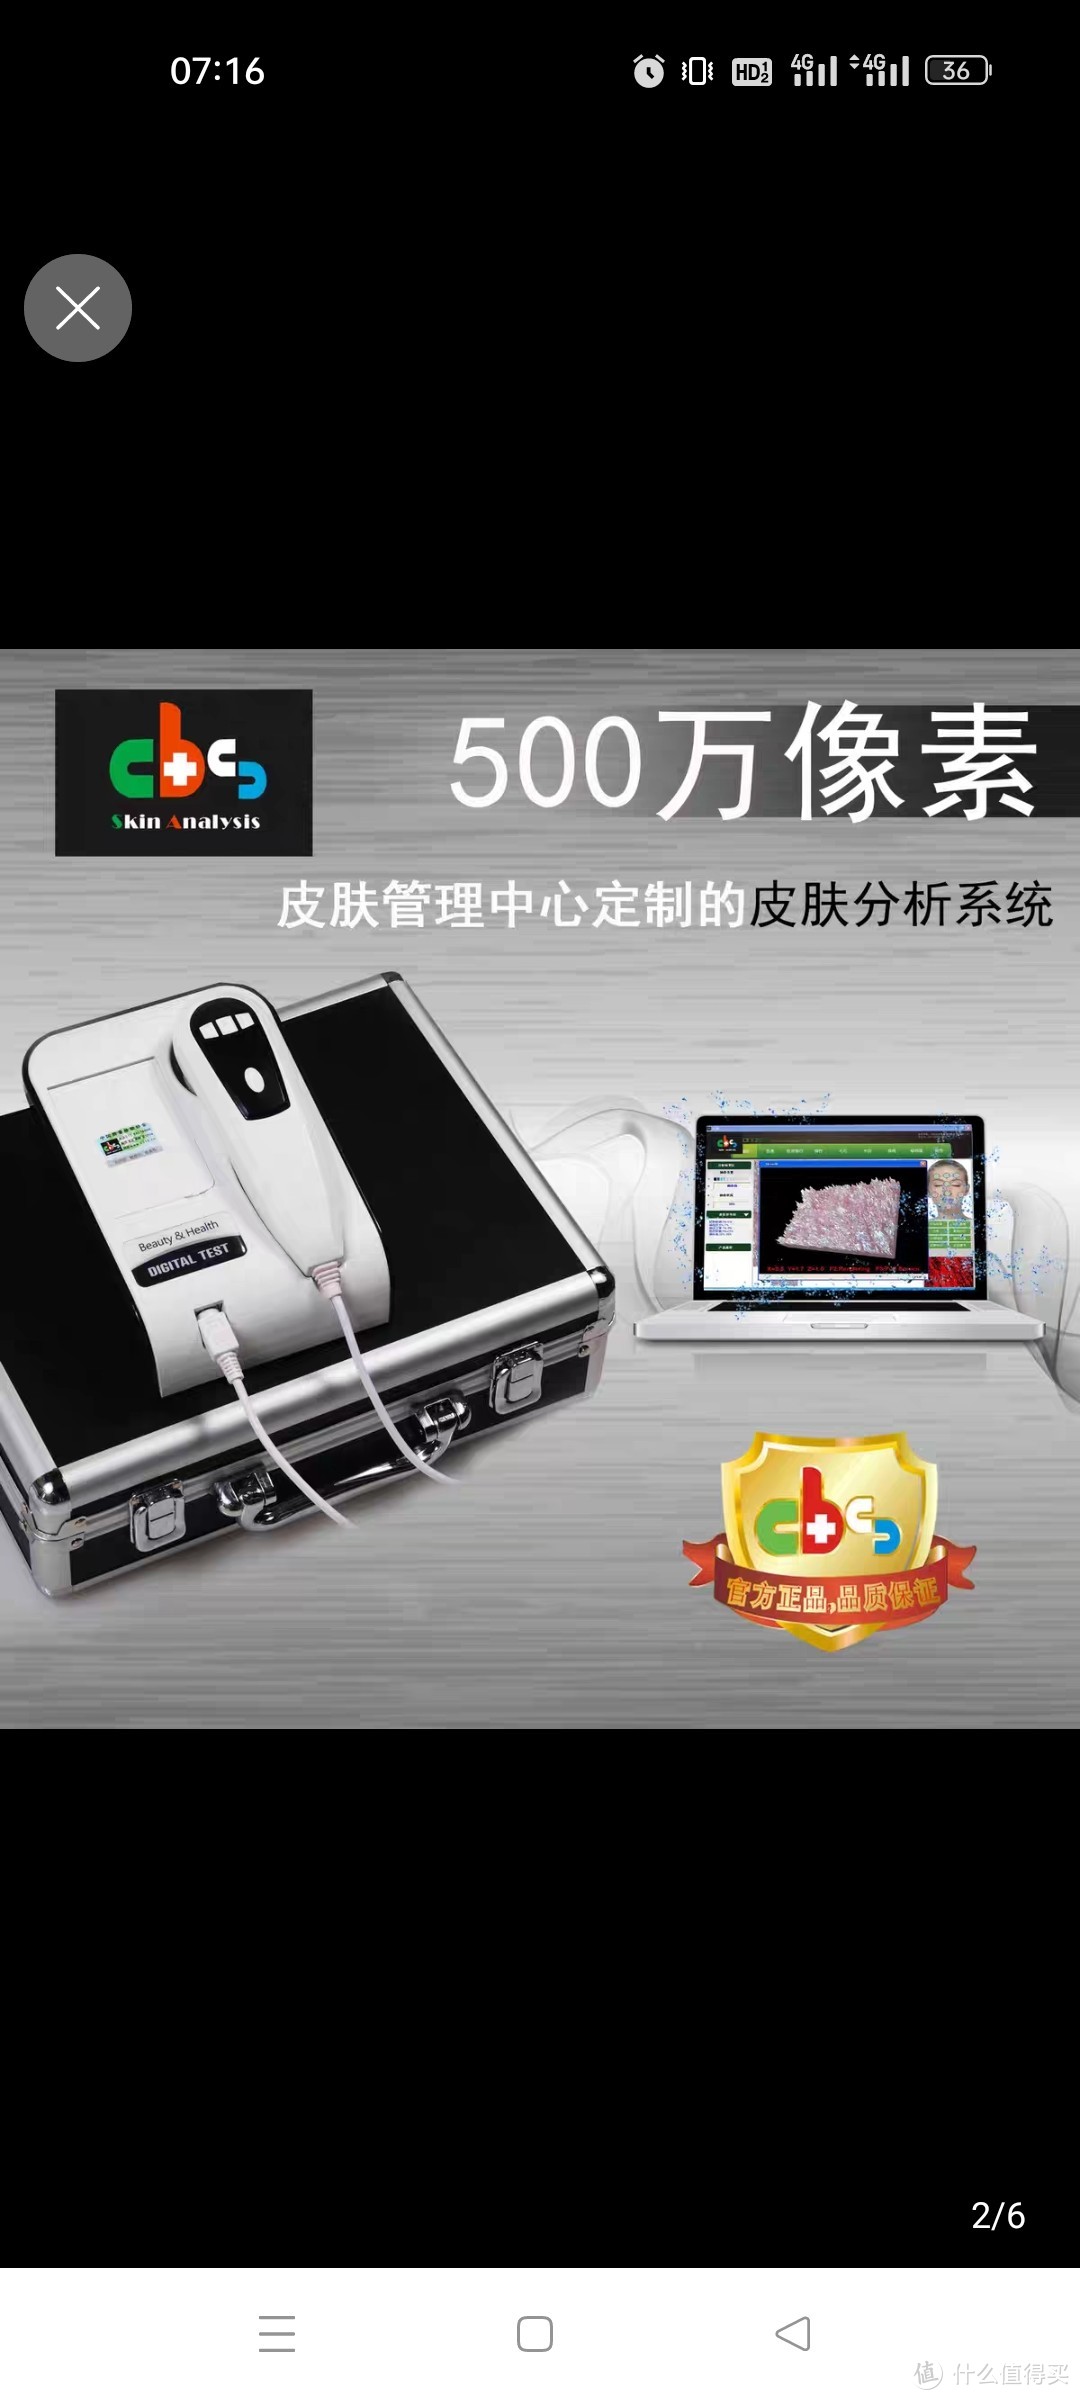 CBS802智能高清500万像素皮肤检测分析测试仪器美容肌肤正品包邮